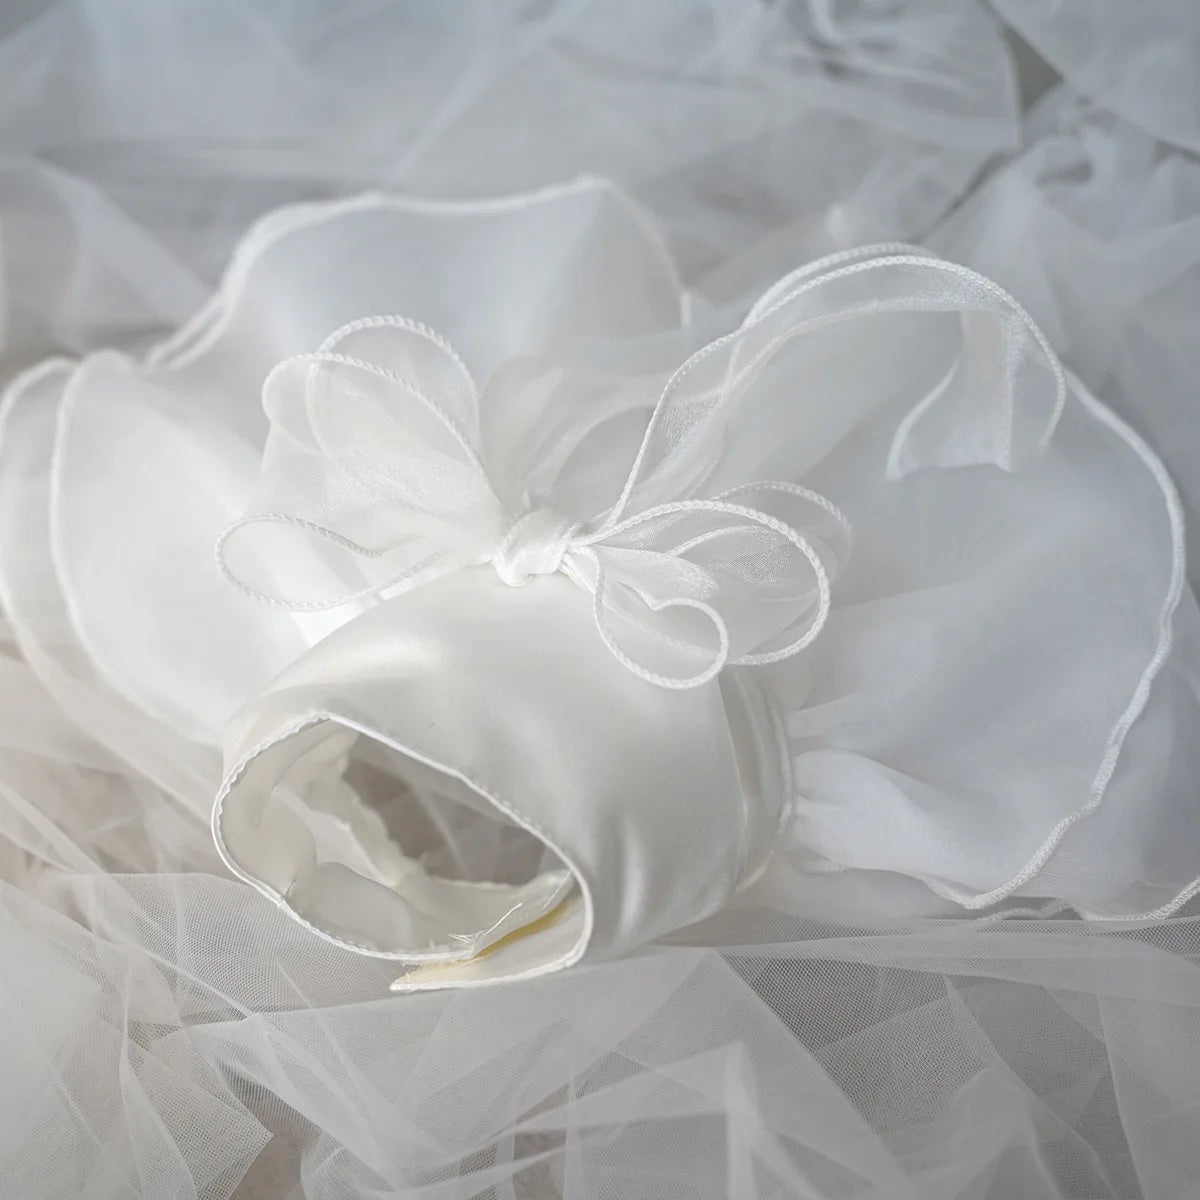 White Tulle Luxury Dog Wedding Dress